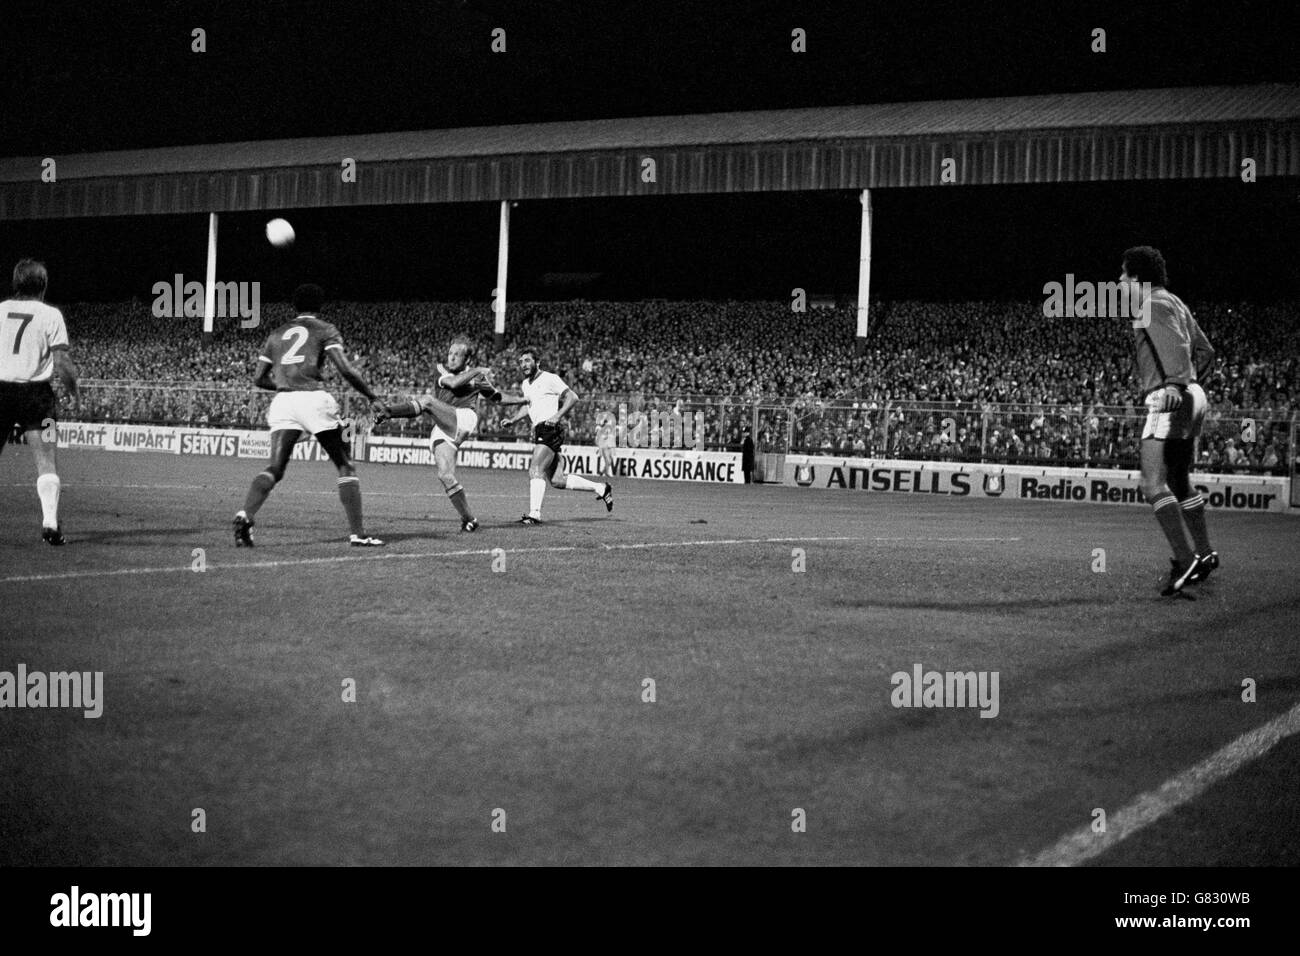 Archie Gemmill (c) di Nottingham Forest odia la palla in chiaro, guardata dai compagni di squadra Peter Shilton (r) e viv Anderson (second l), Kenny Dalglish (l) e Alan Kennedy (r) di Liverpool Foto Stock